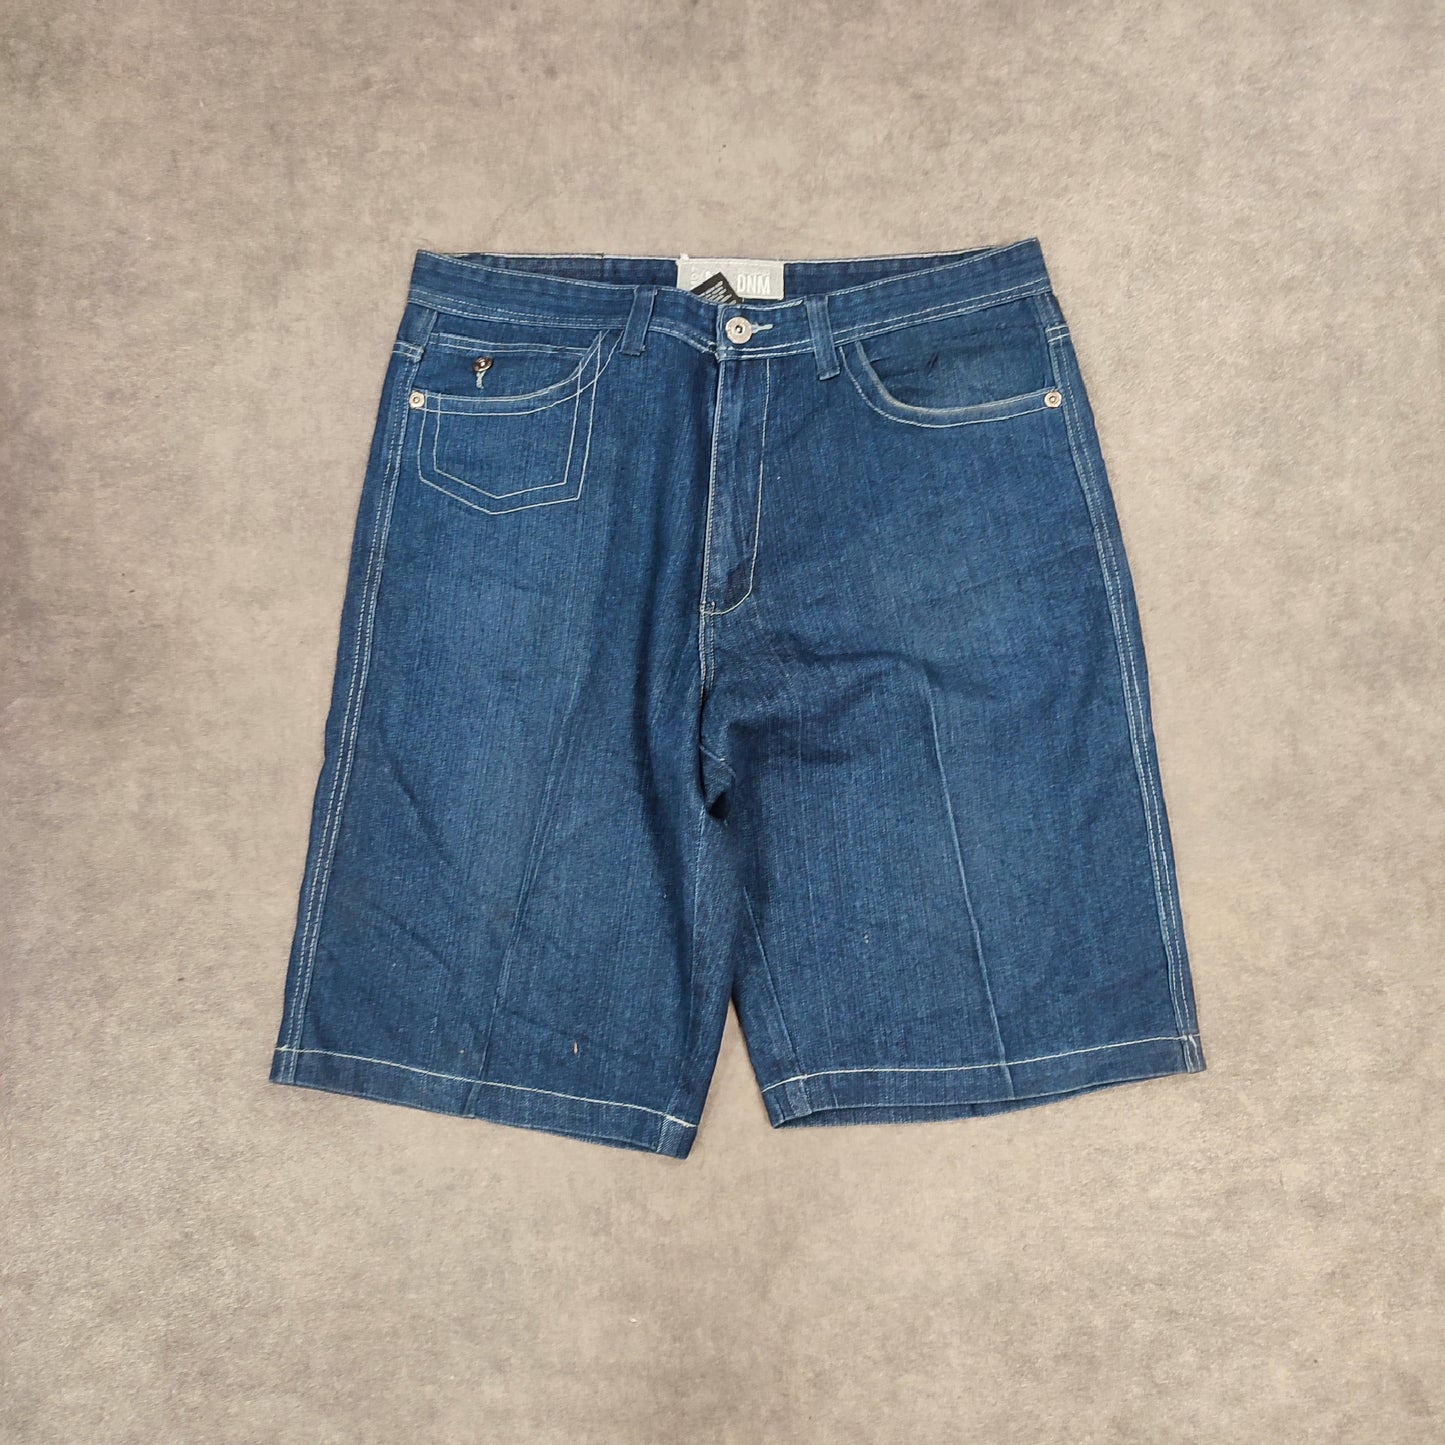 Jort jeans white stitch W38 - FR48